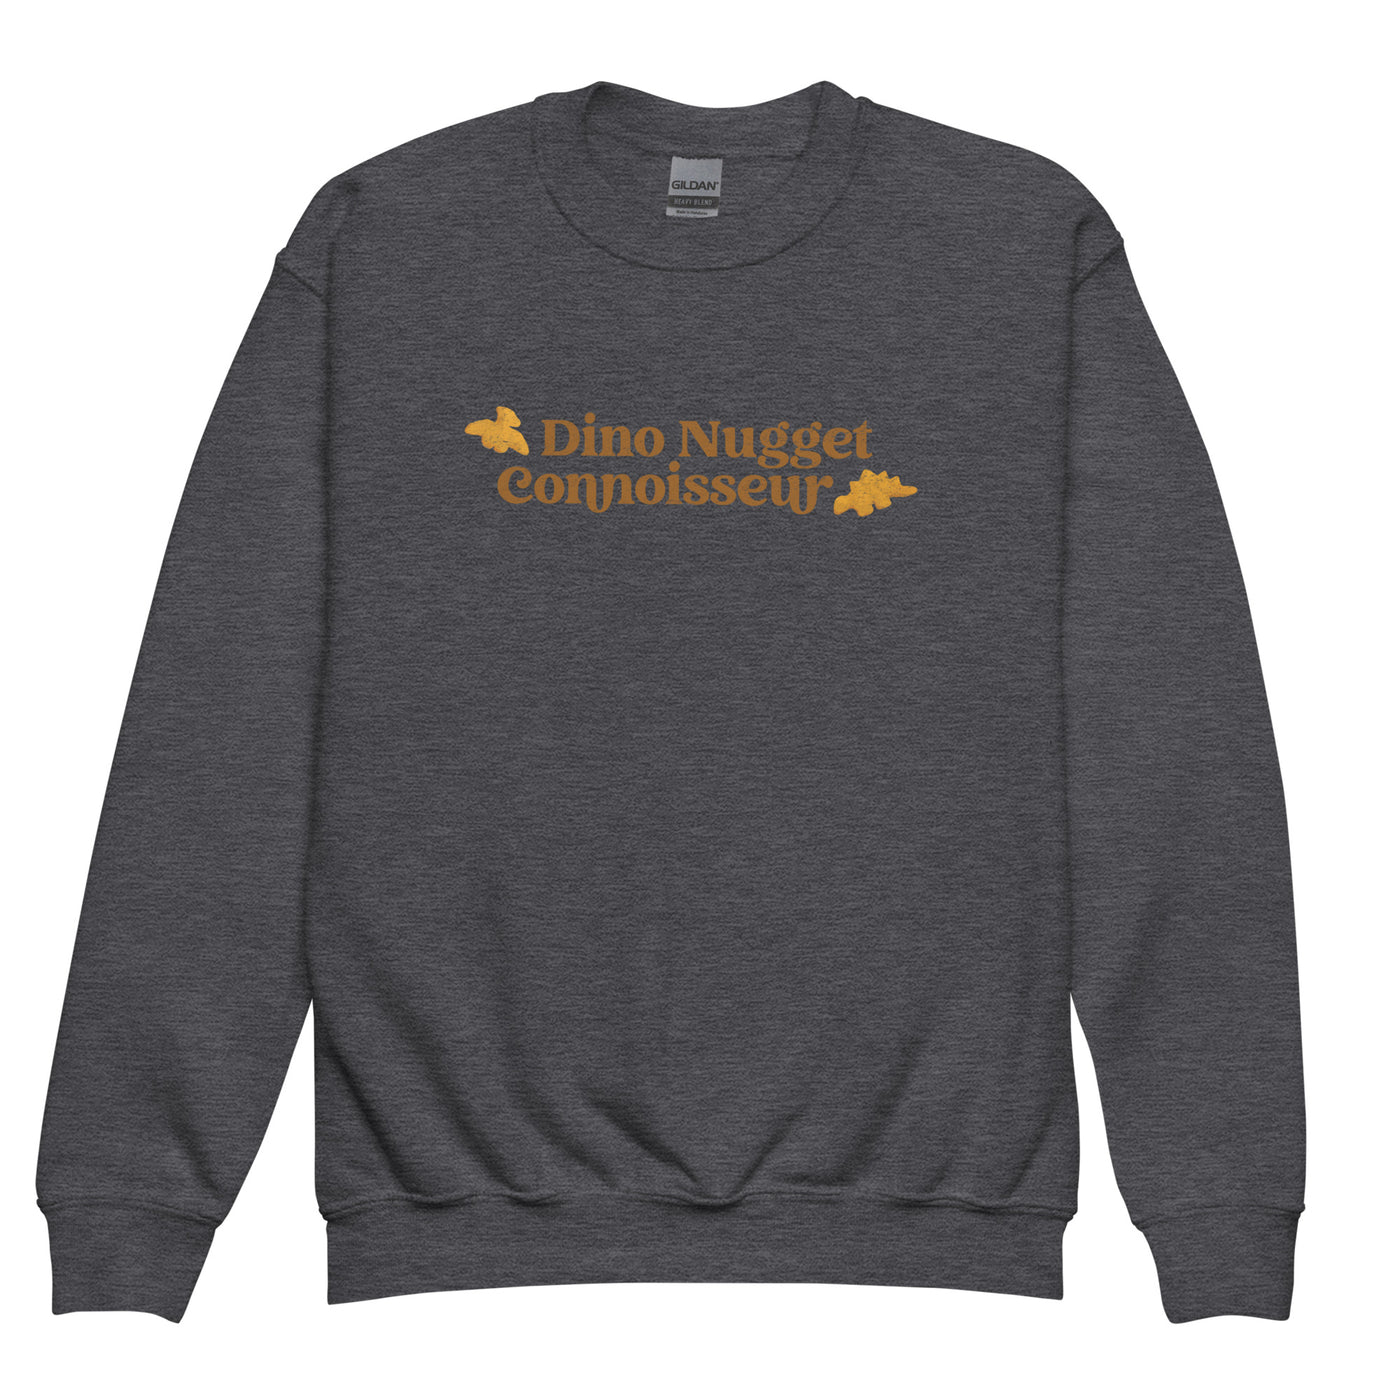 Kids 'Dino Nugget Connoisseur' Crewneck Sweatshirt